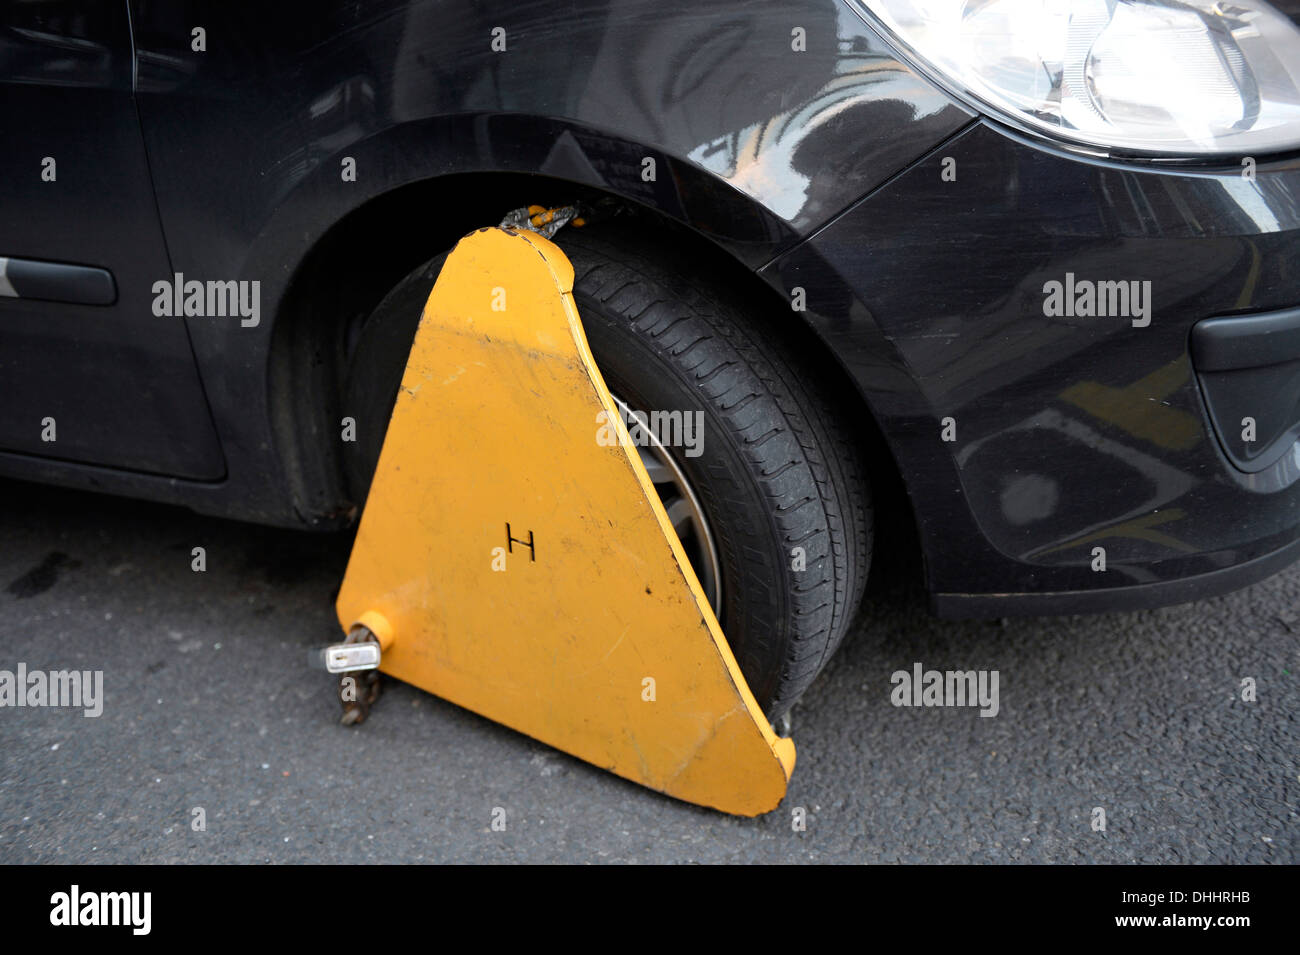 Wegfahrsperre, Rad-Klemme auf dem Rad eines Autos geparkt in einer